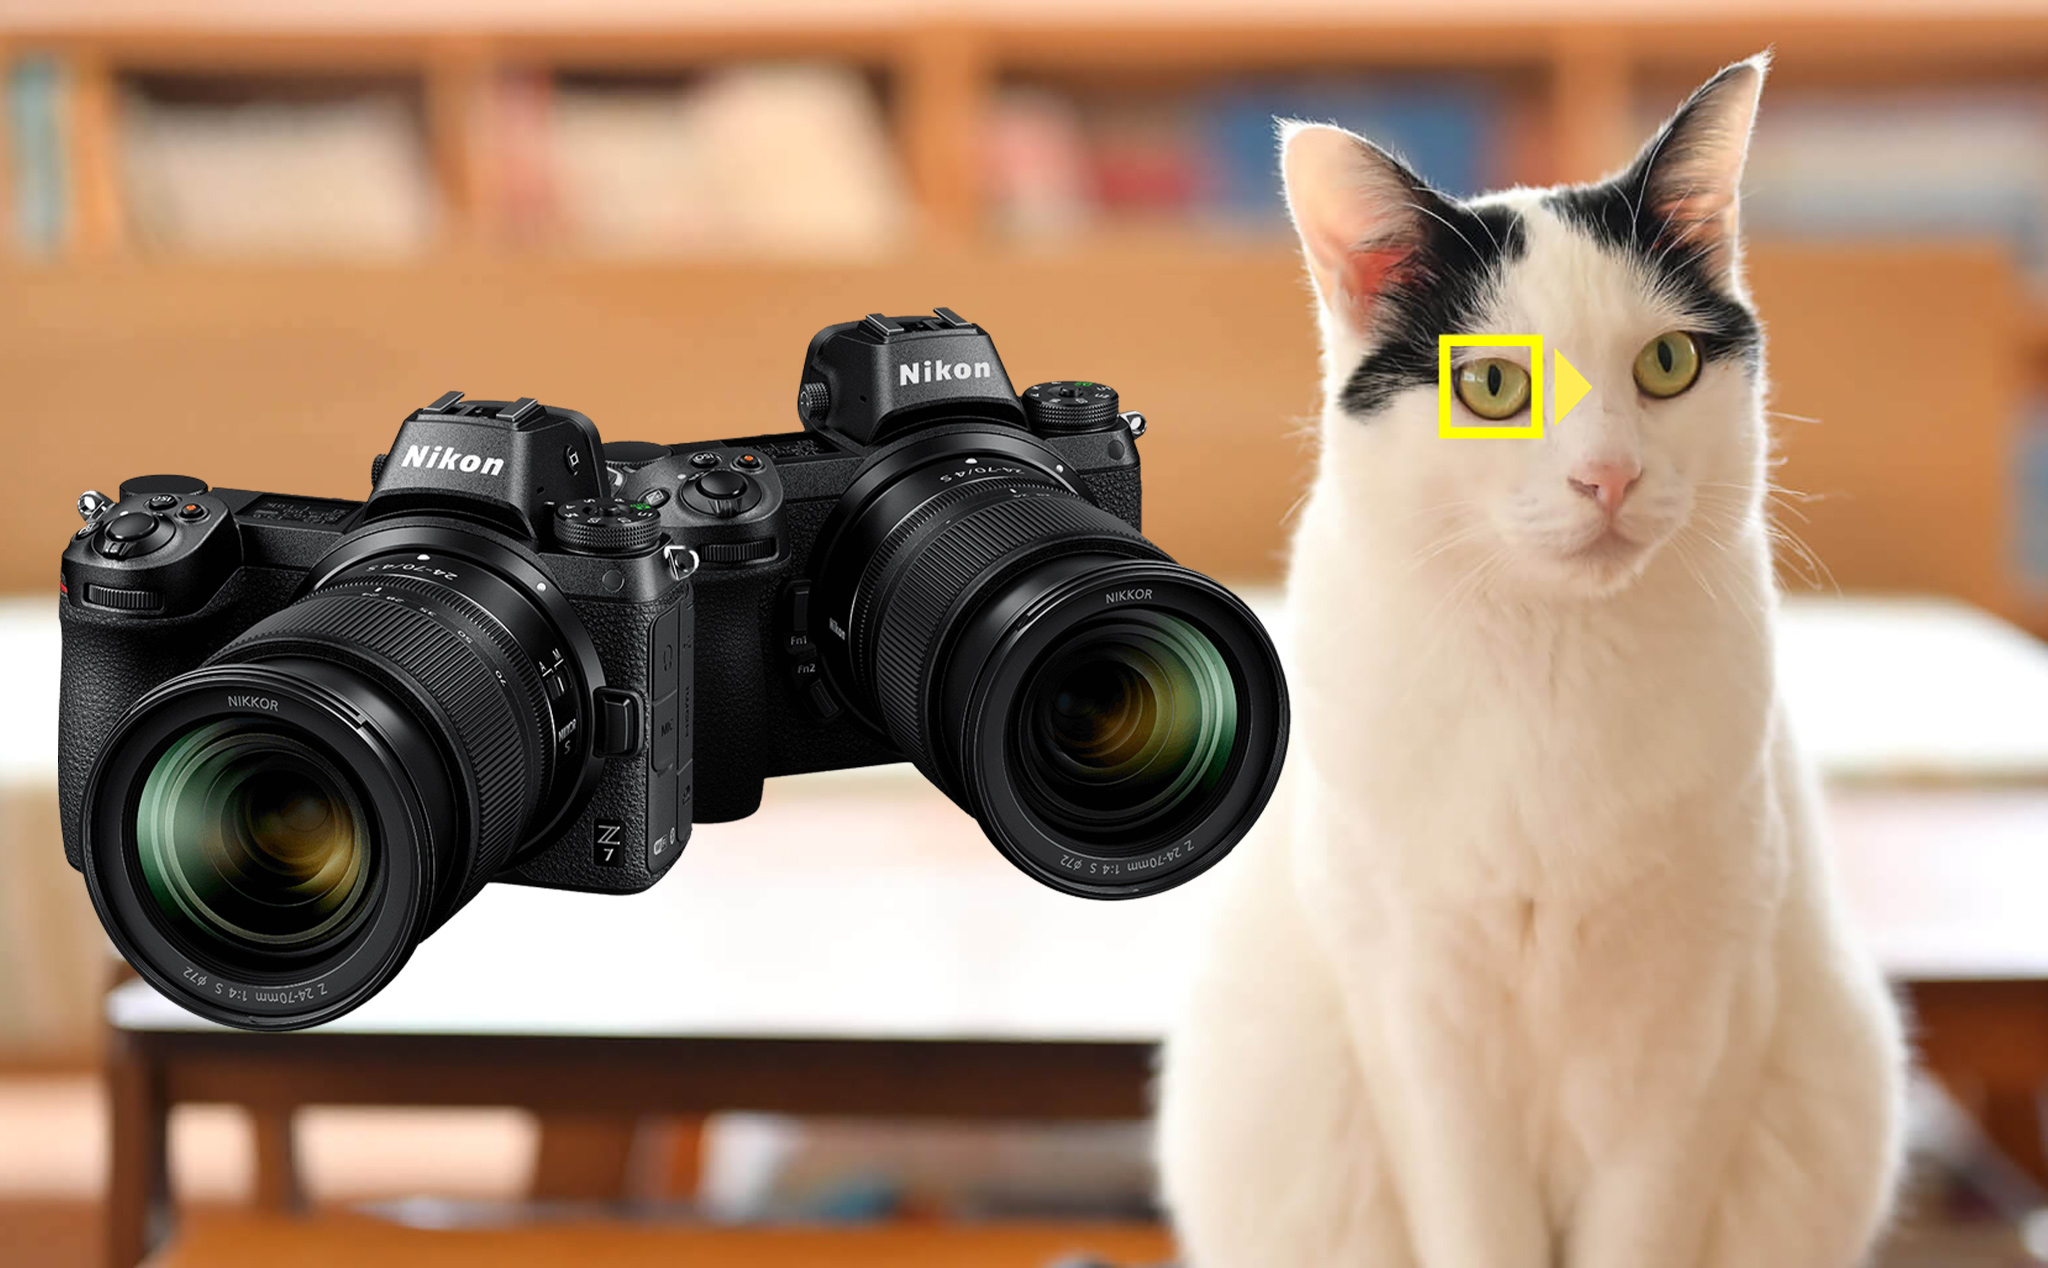 "Quàng thượng, hãy vui lên!" Nikon Z6/Z7 đã lấy nét tự động mắt động vật rồi đấy!